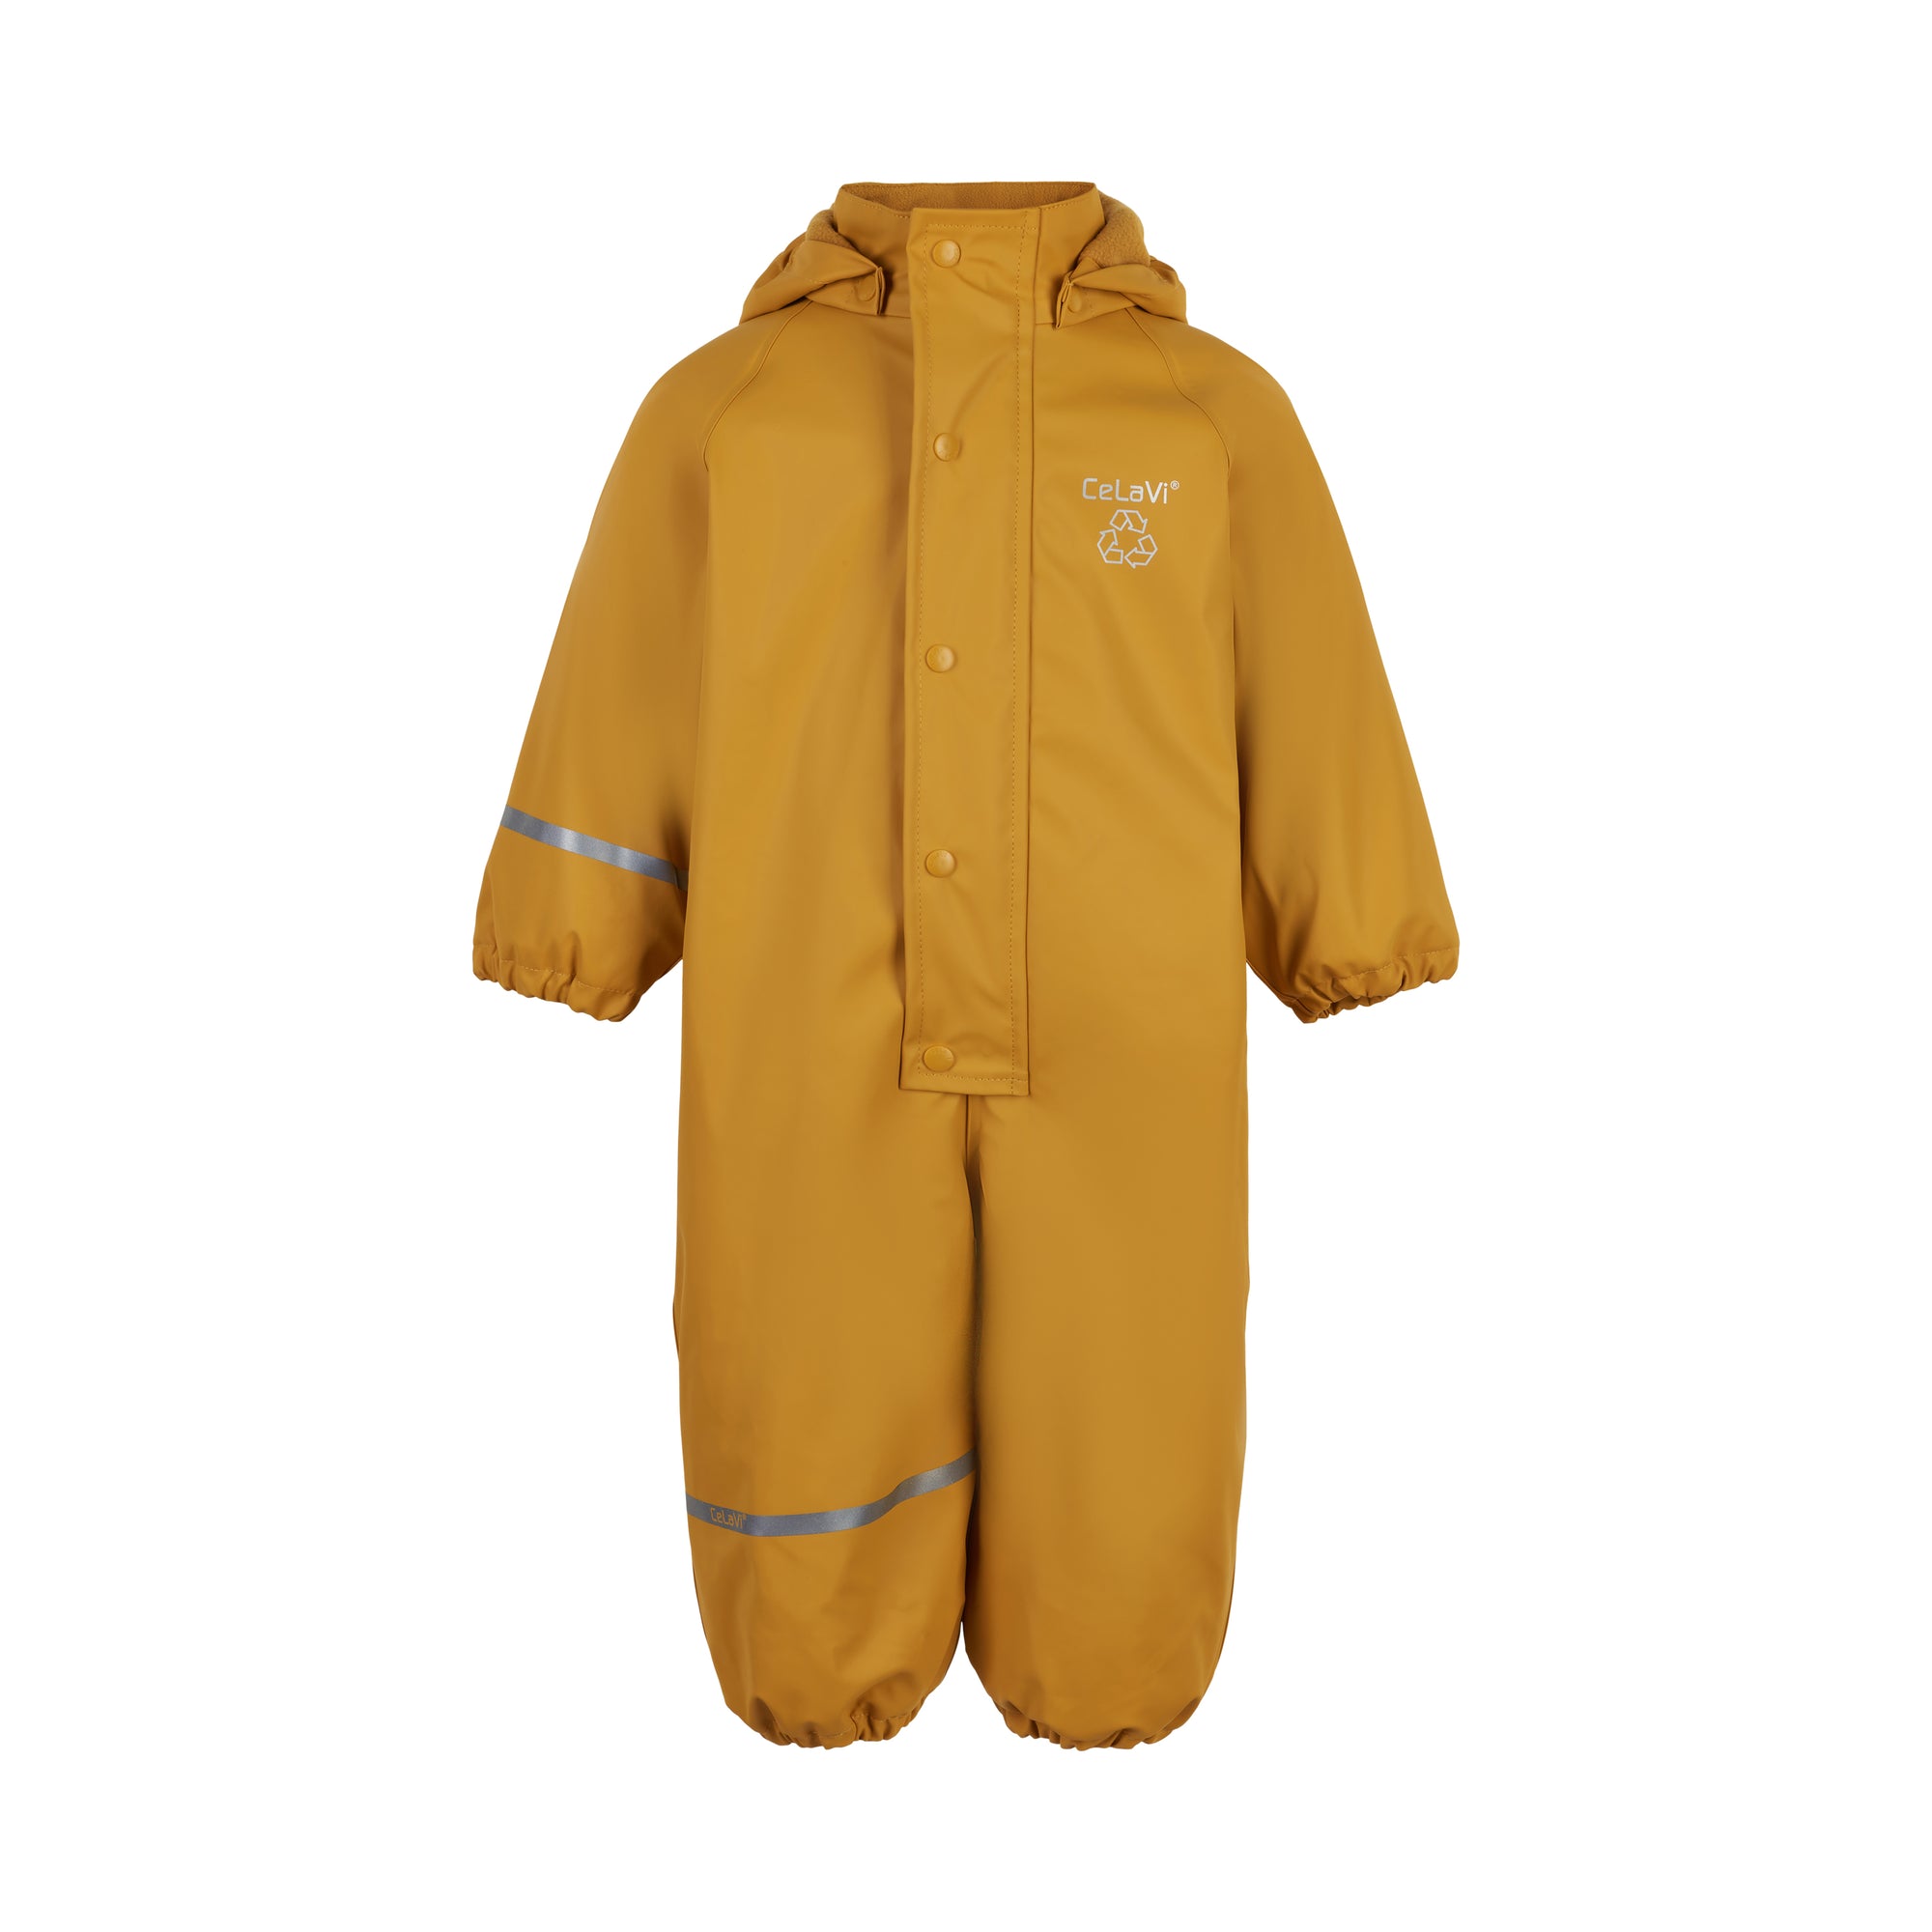 Adviseren Onophoudelijk Oneerlijkheid Celavi Rainwear Suit Fleece Solid Mineral Yellow - Gevoerd Regenpak Ge -  GOEDvanToen - Eerlijke & biologische kinderkleding en babykleding